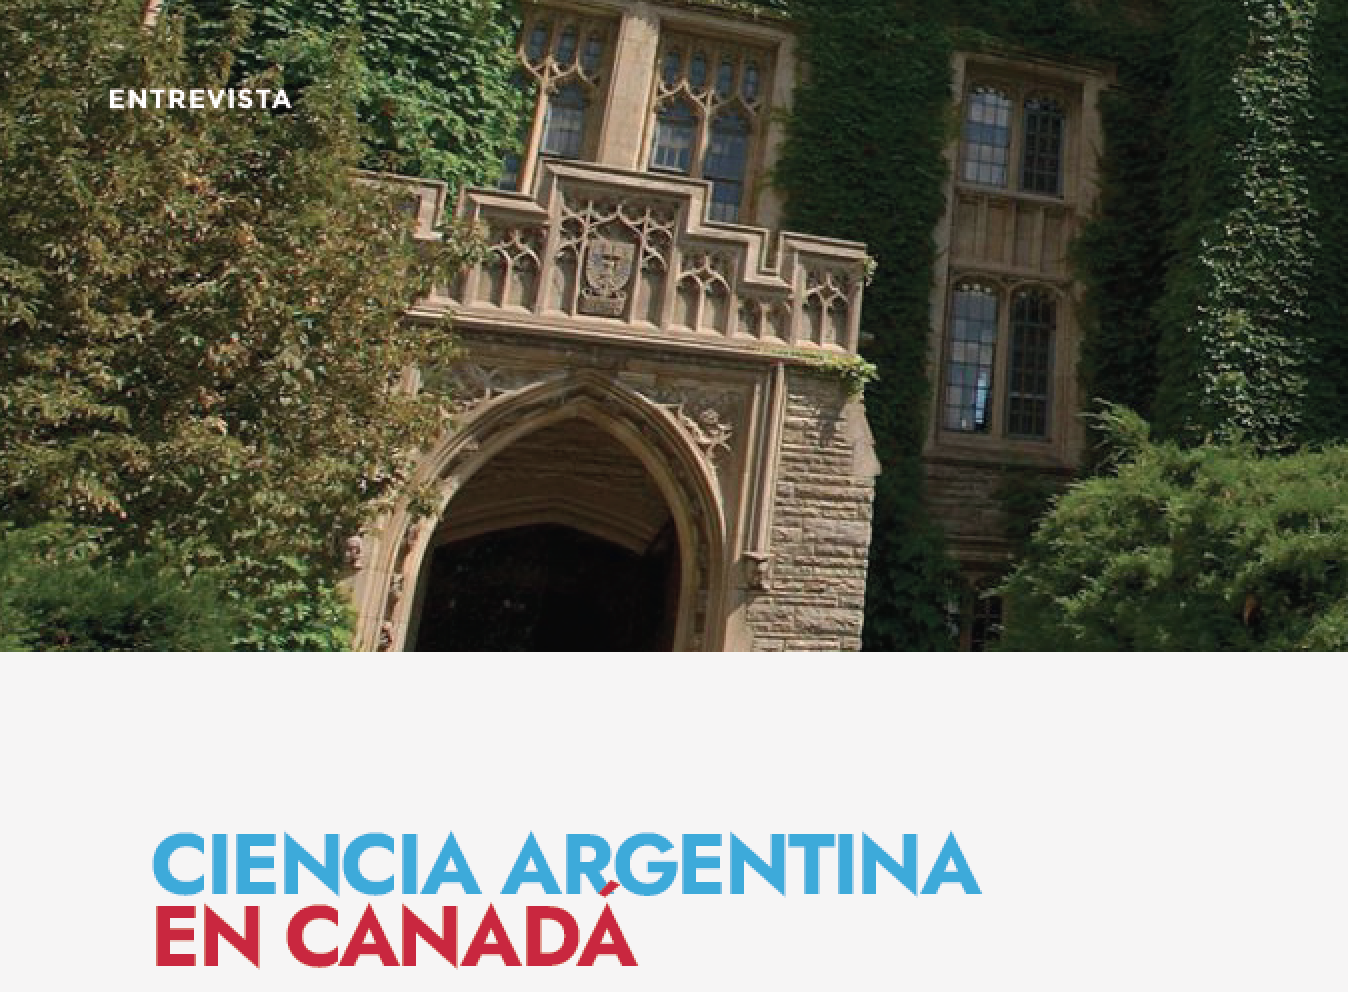 Ciencia Argentina en Canadá. 
Entrevista con la Dra. María Inés Pinto-Sánchez 